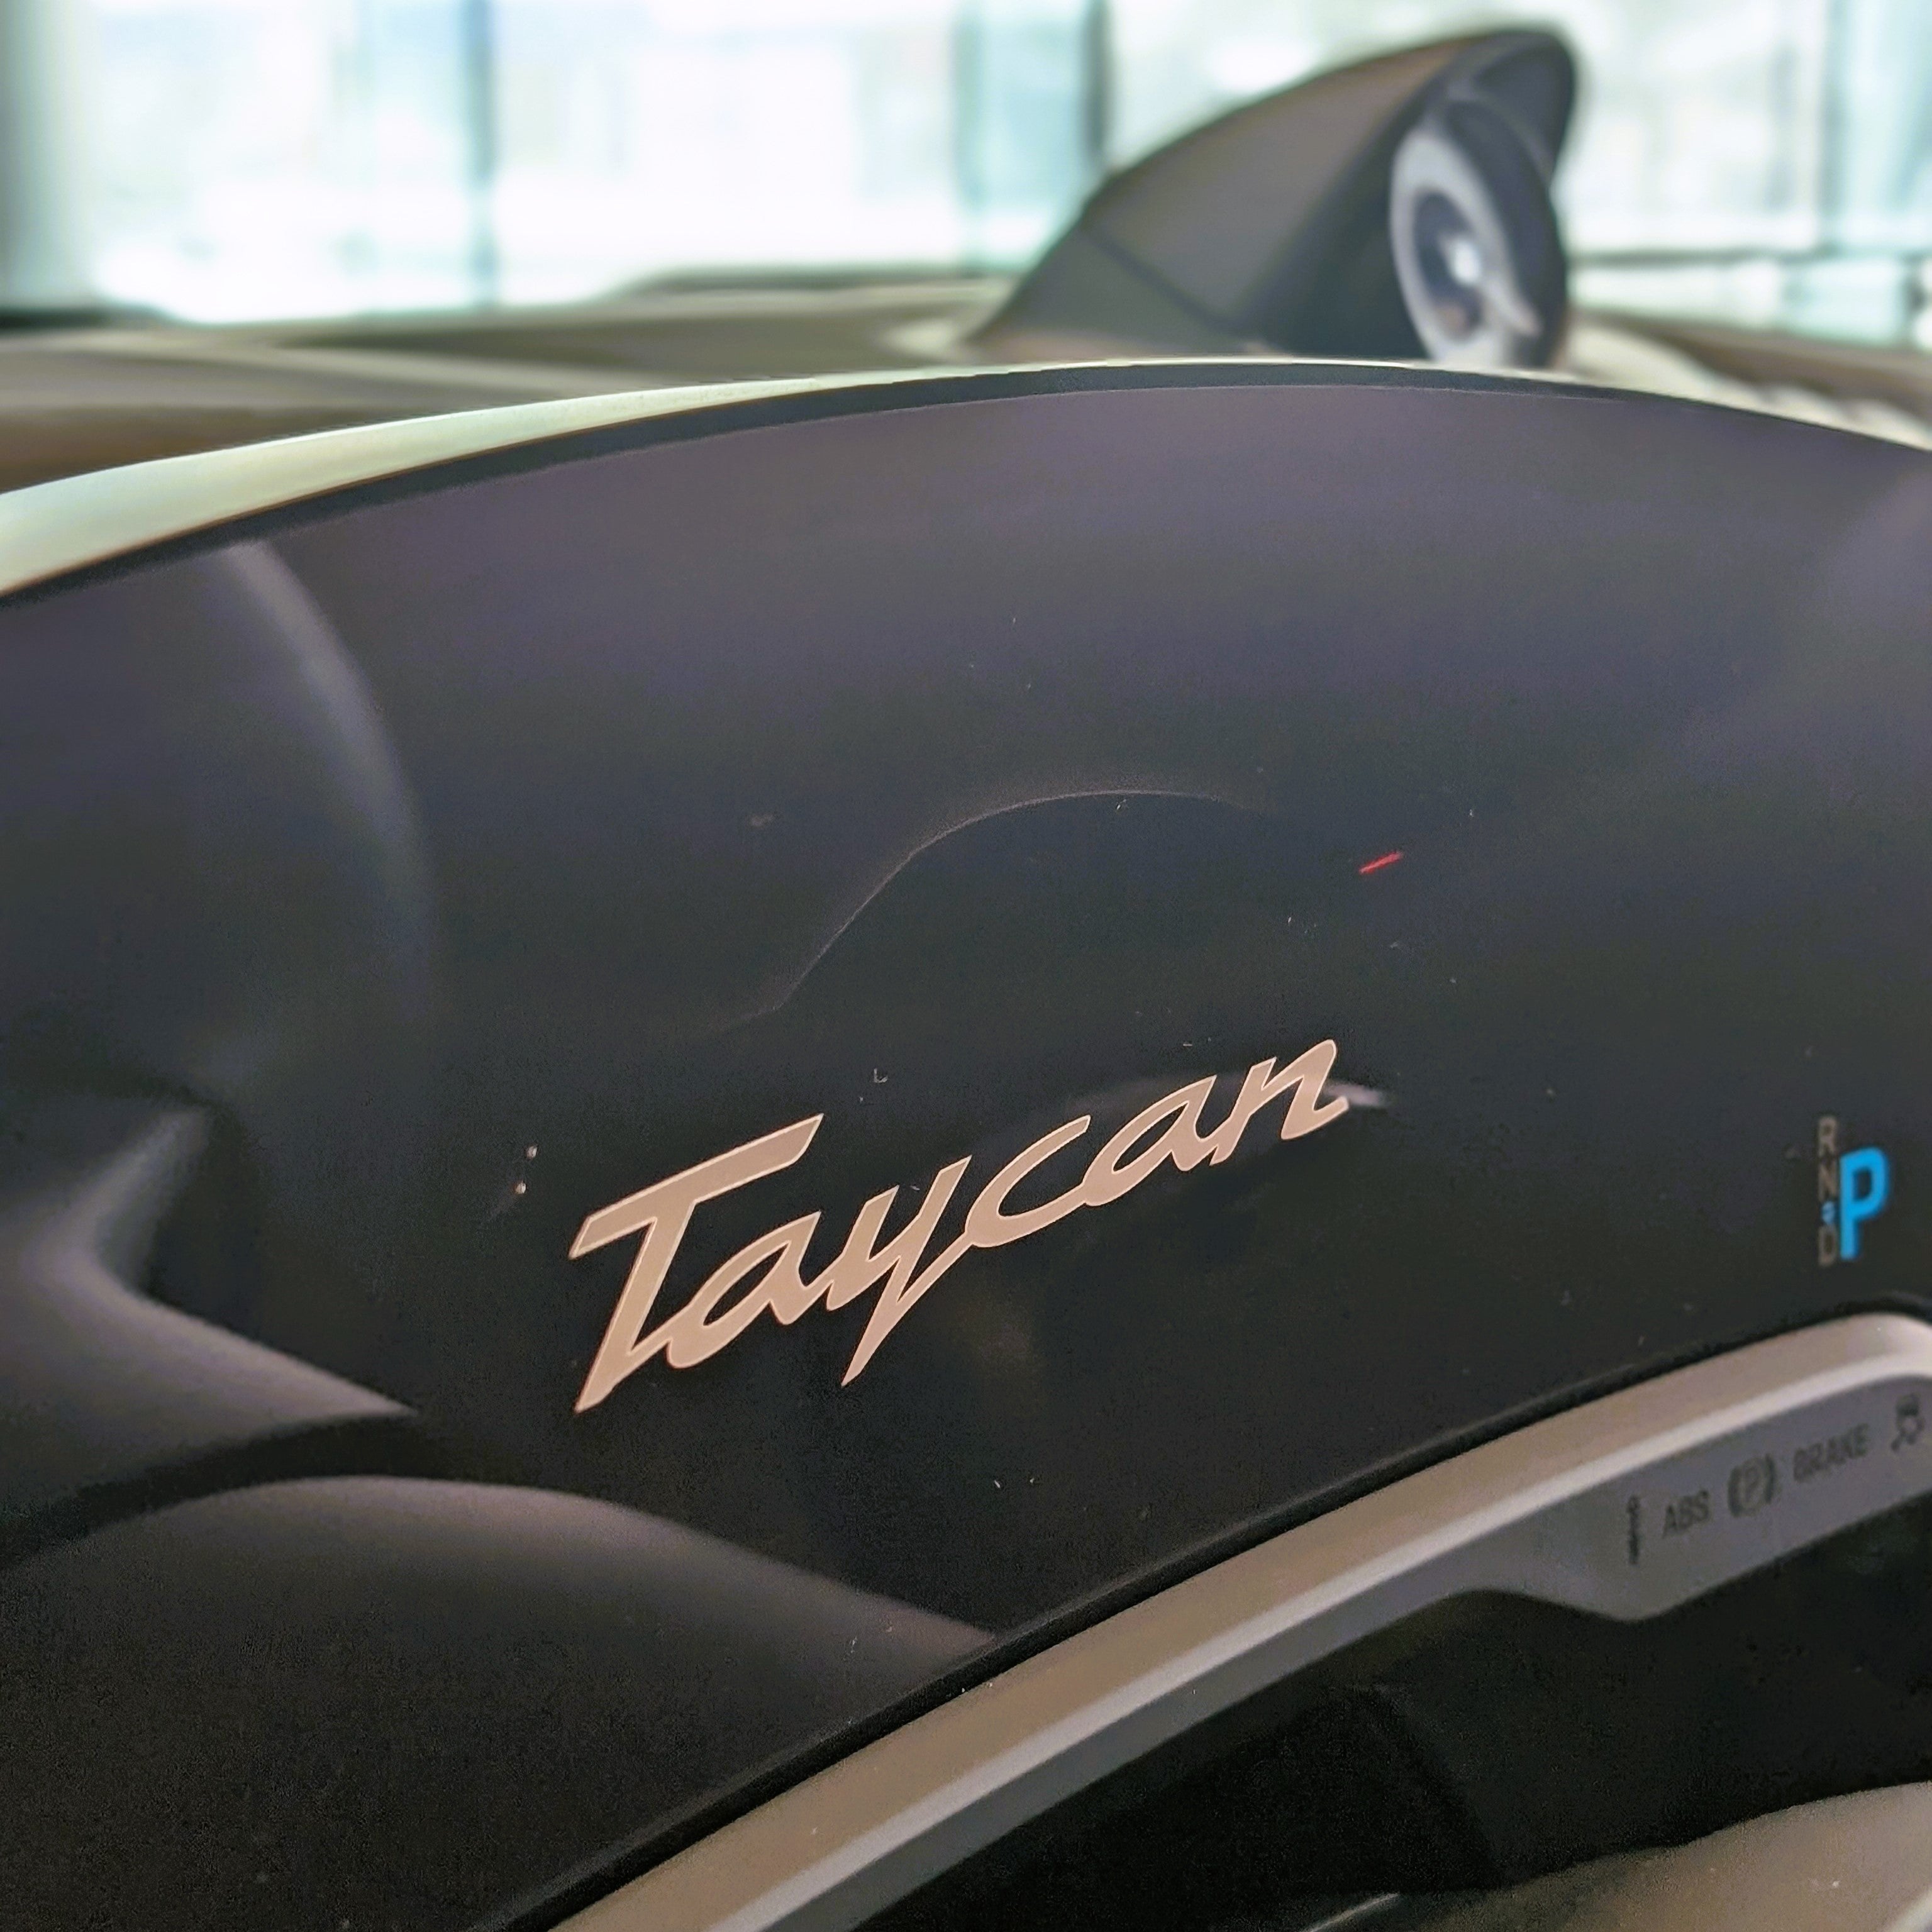 The new Porsche Taycan: